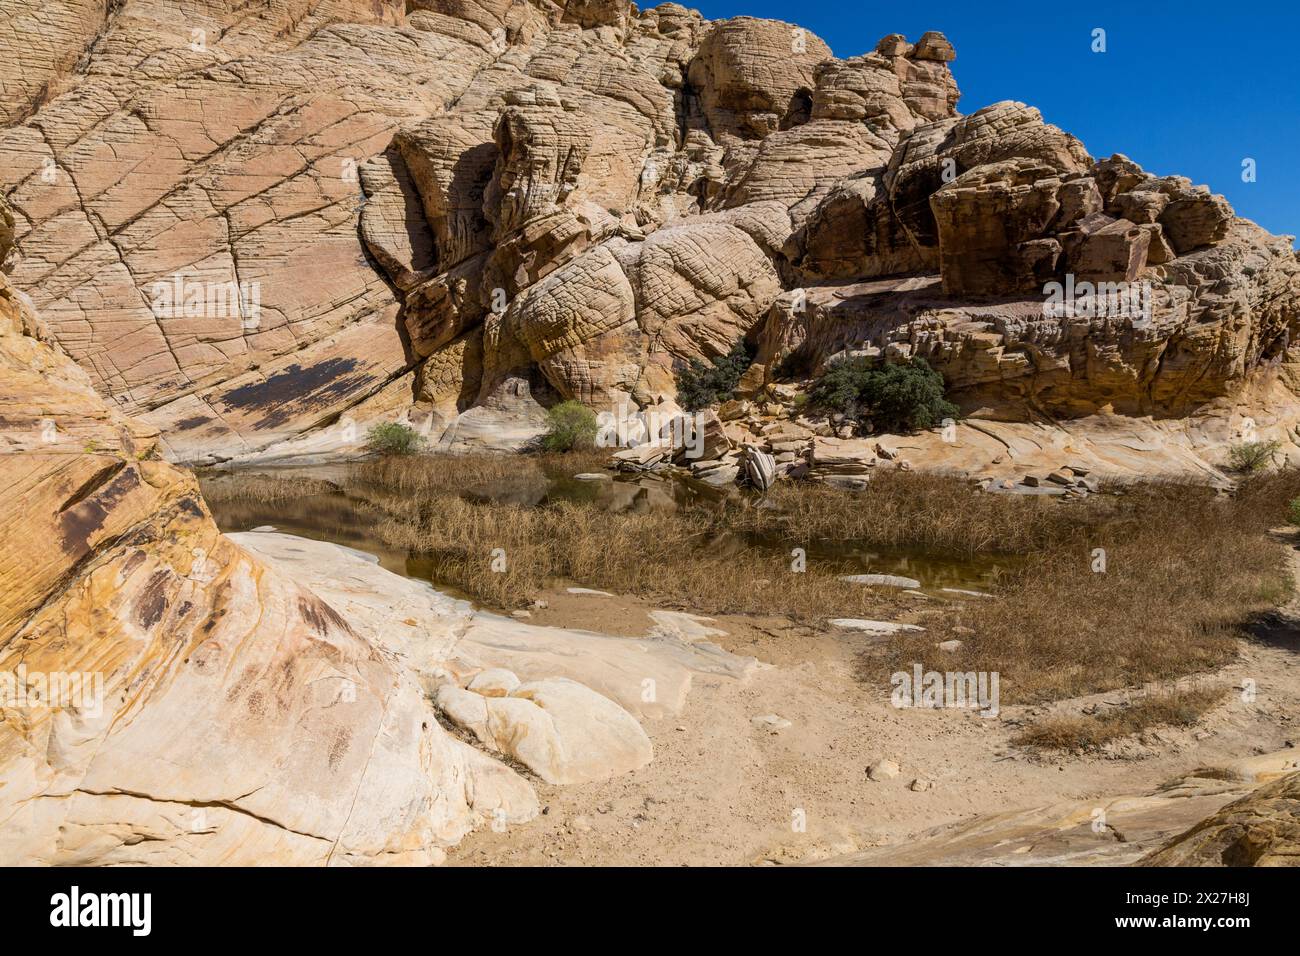 Red Rock Canyon, Nevada. Calico Tanks am Ende des Trails. Sandstein zeigt Kreuzbeete aus alten Sanddünen. Desert Varnish erscheint auf Felsen auf le Stockfoto